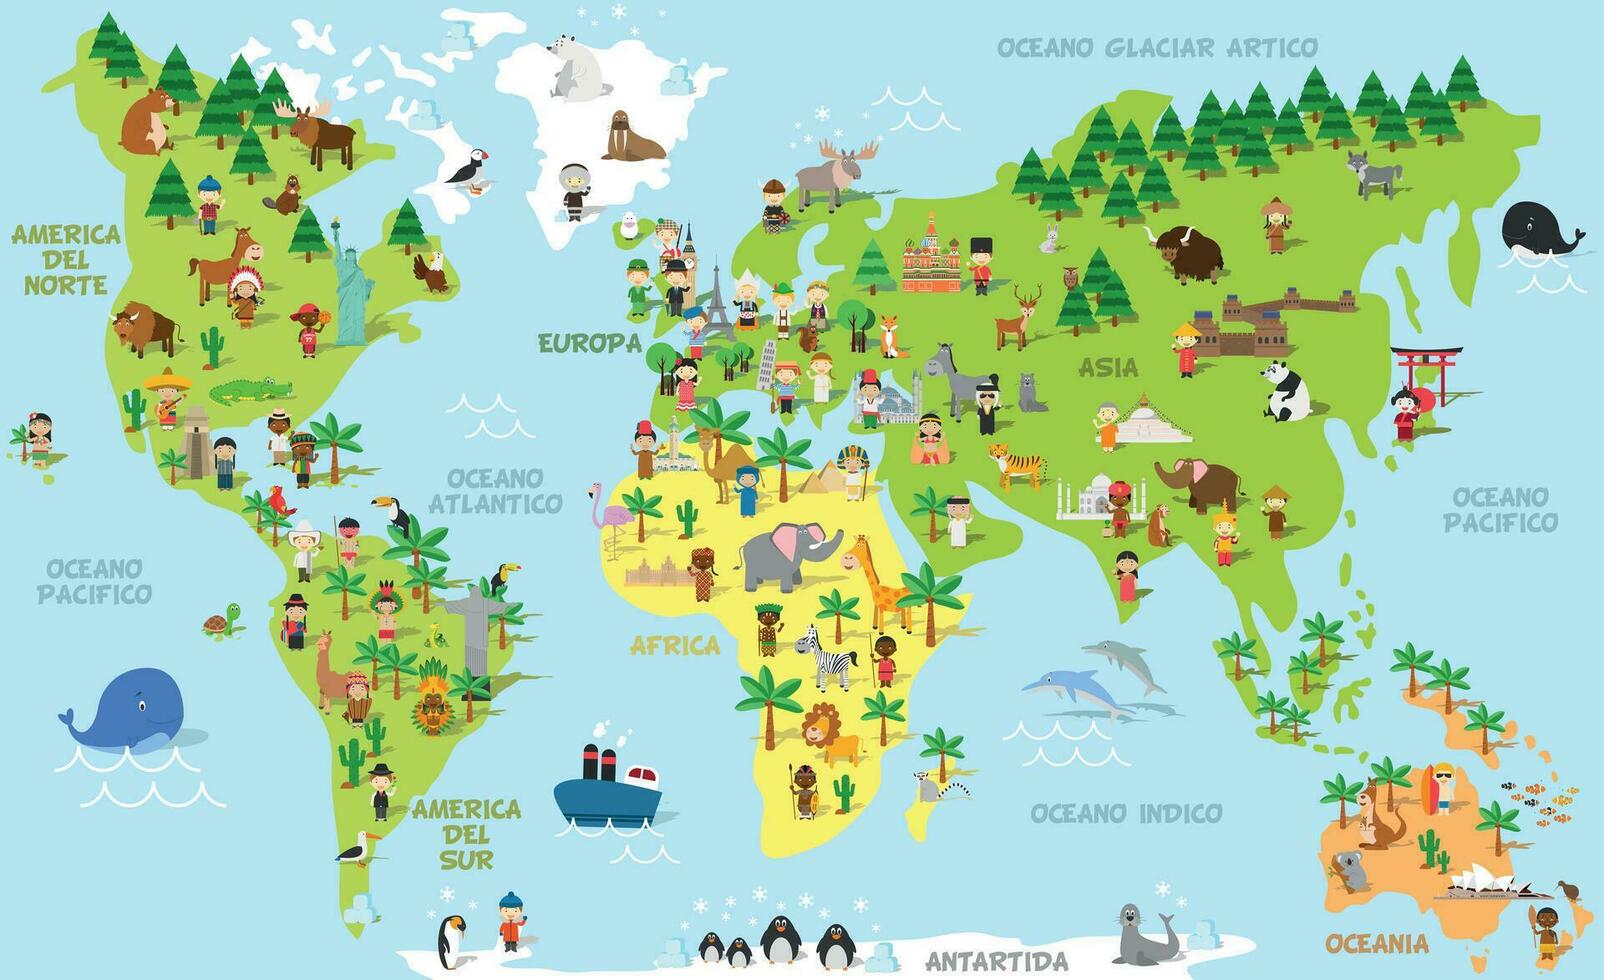 grappig tekenfilm wereld kaart met kinderen van verschillend nationaliteiten, dieren en monumenten van allemaal de continenten en oceanen. namen in Spaans. vector illustratie voor peuter- onderwijs en kinderen ontwerp